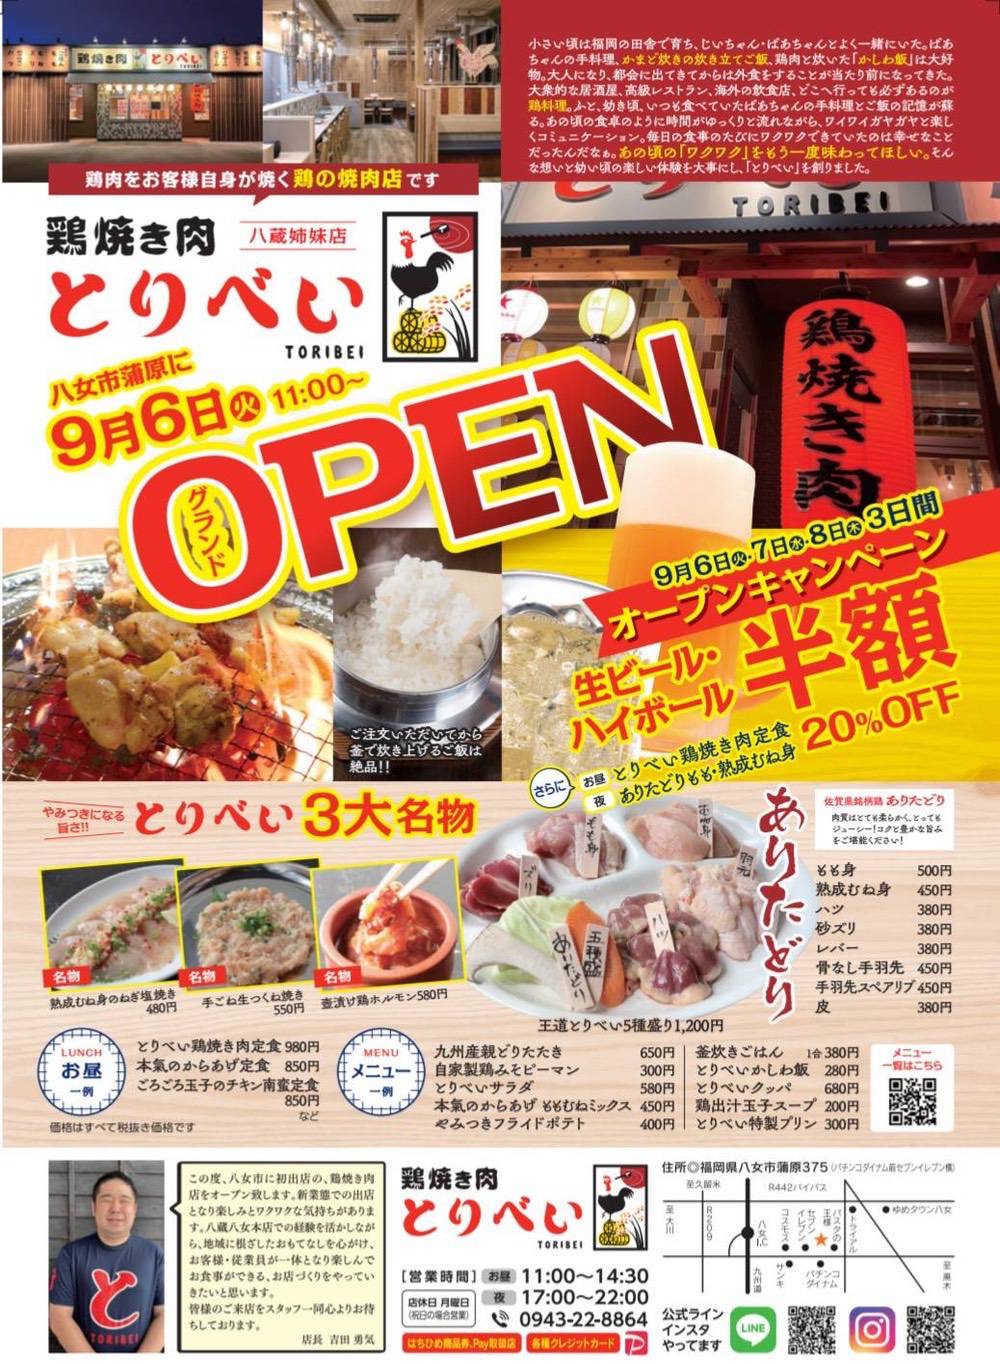 「鶏焼き肉とりべい」八女市に9月6日オープン！鶏の焼肉スタイルのお店